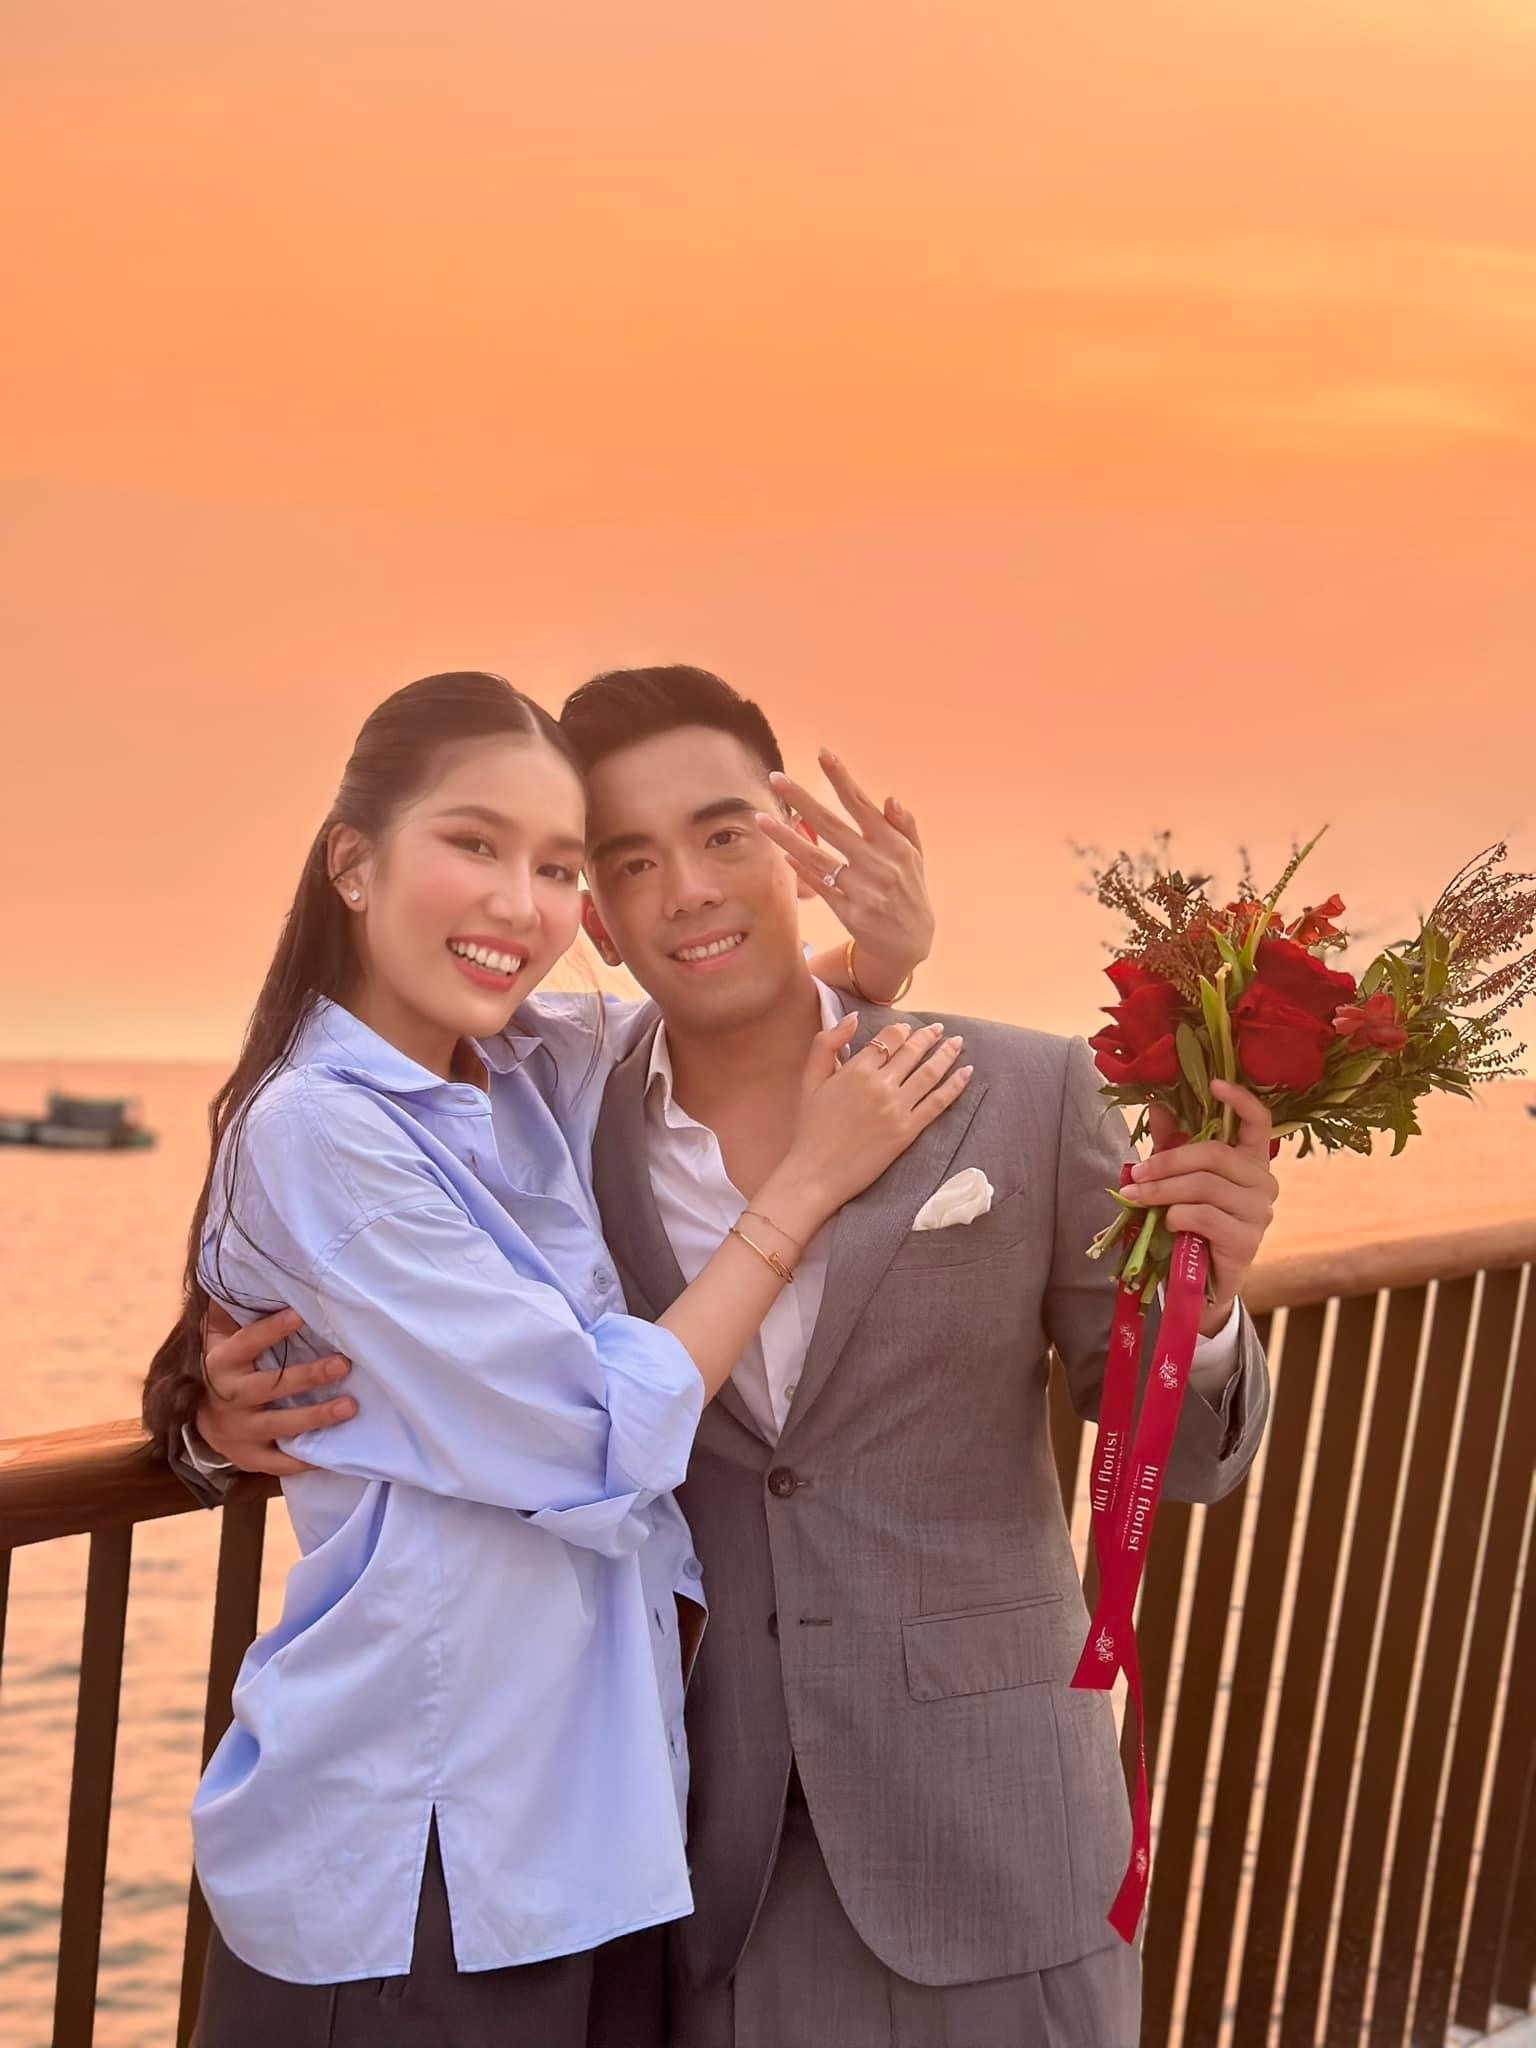 5 đám cưới sao Việt được mong chờ nhất cuối năm: Gin Tuấn Kiệt và Puka đẹp đôi, Sam quyết giấu mặt chú rể - ảnh 1